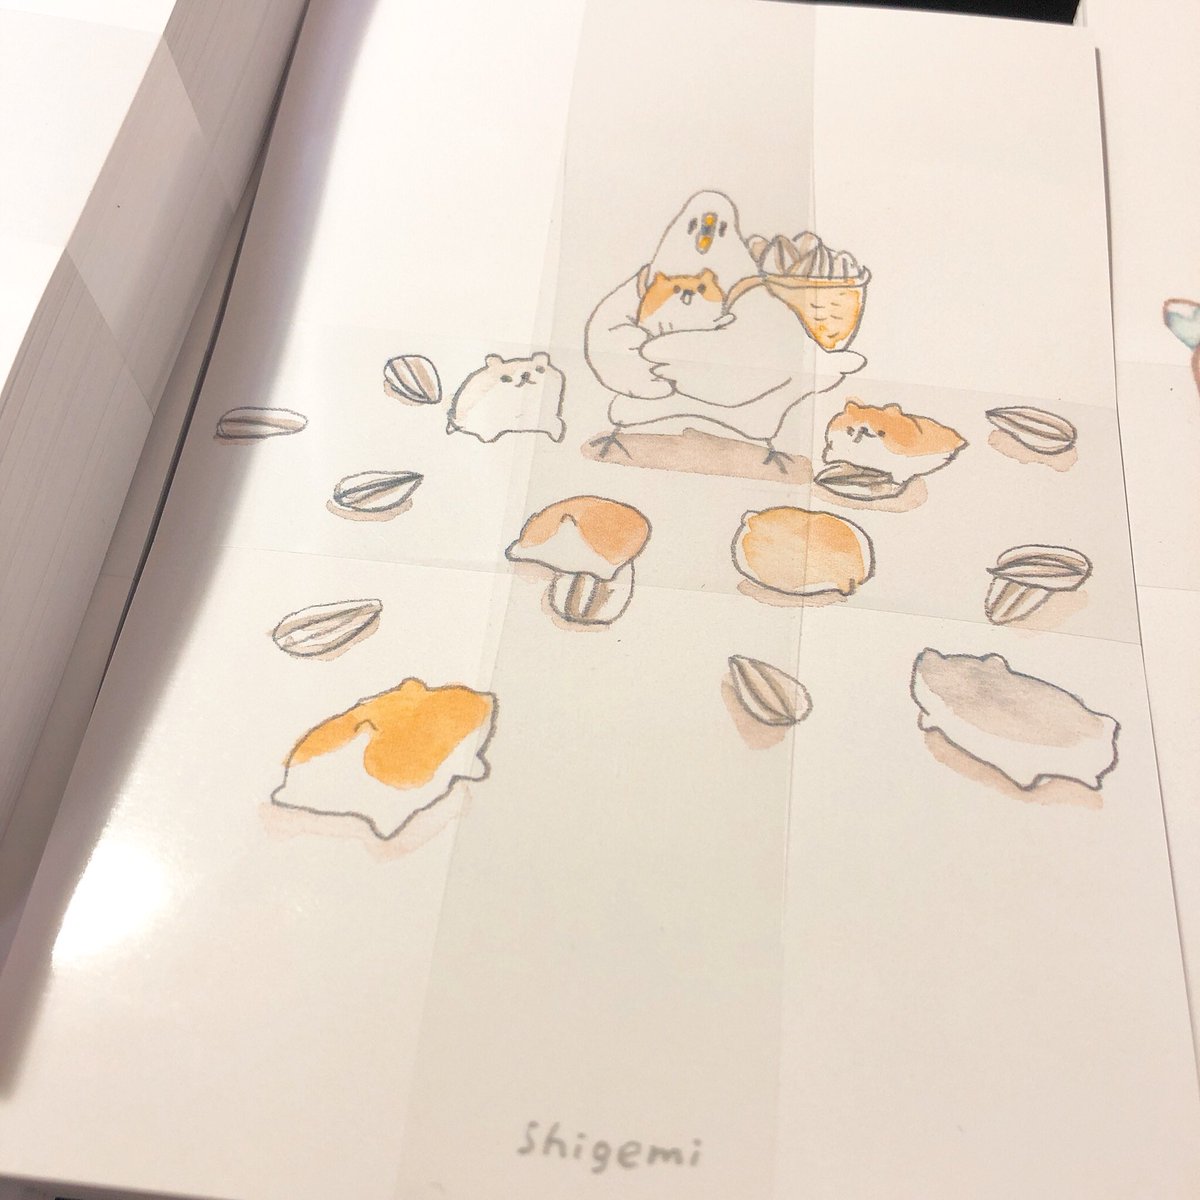 「ハムちゃんもポストカードになりました。

個展の時の作品をちびちび
ポストカード」|shigemiのイラスト